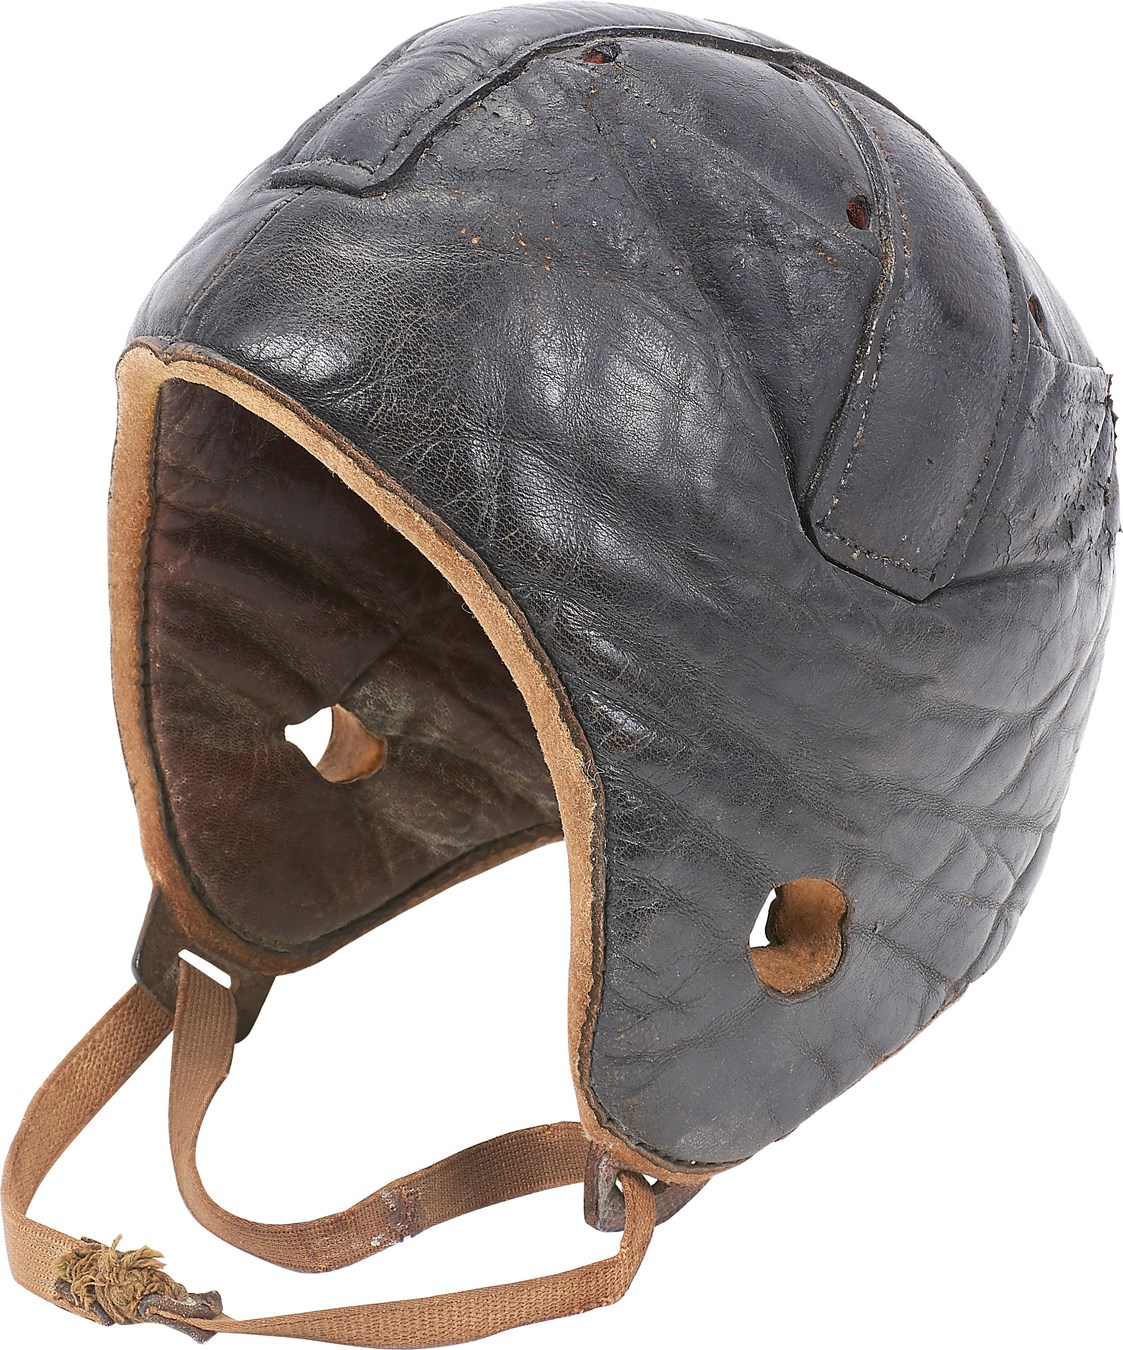 Early Harvard Style Football Helmet